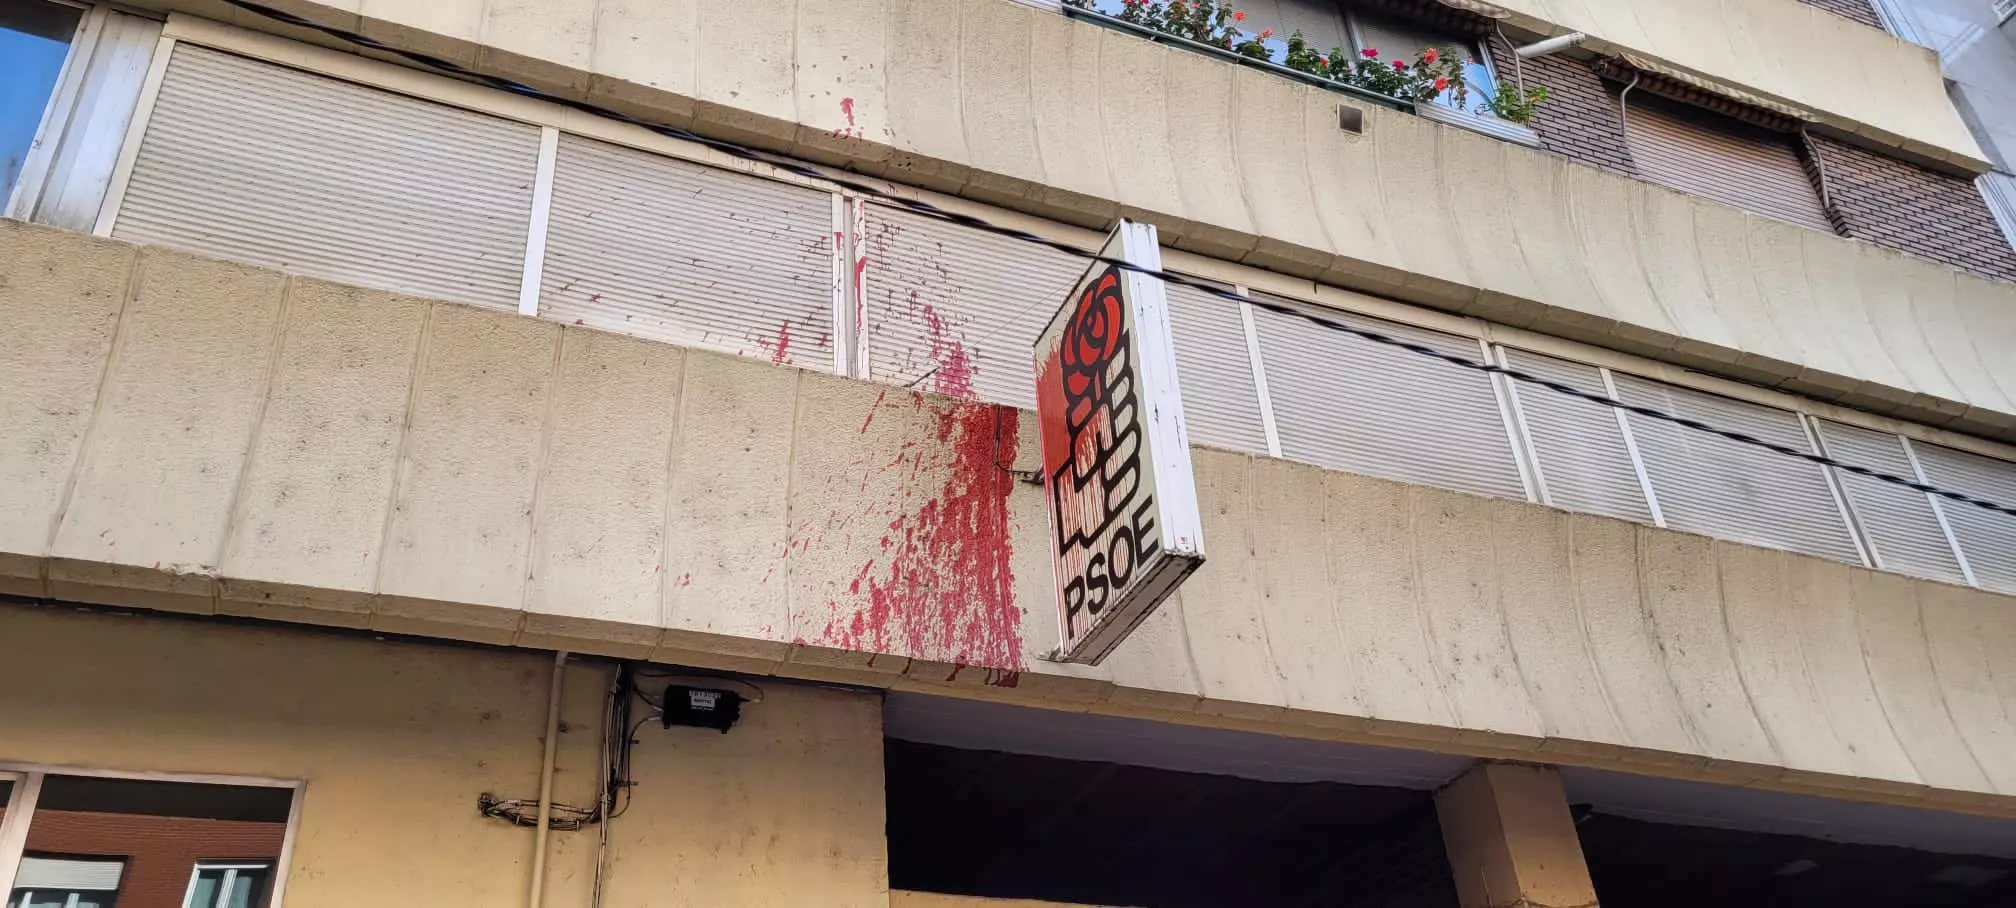 Sede del PSOE de Ponferrada vandalizada con pintura roja 2